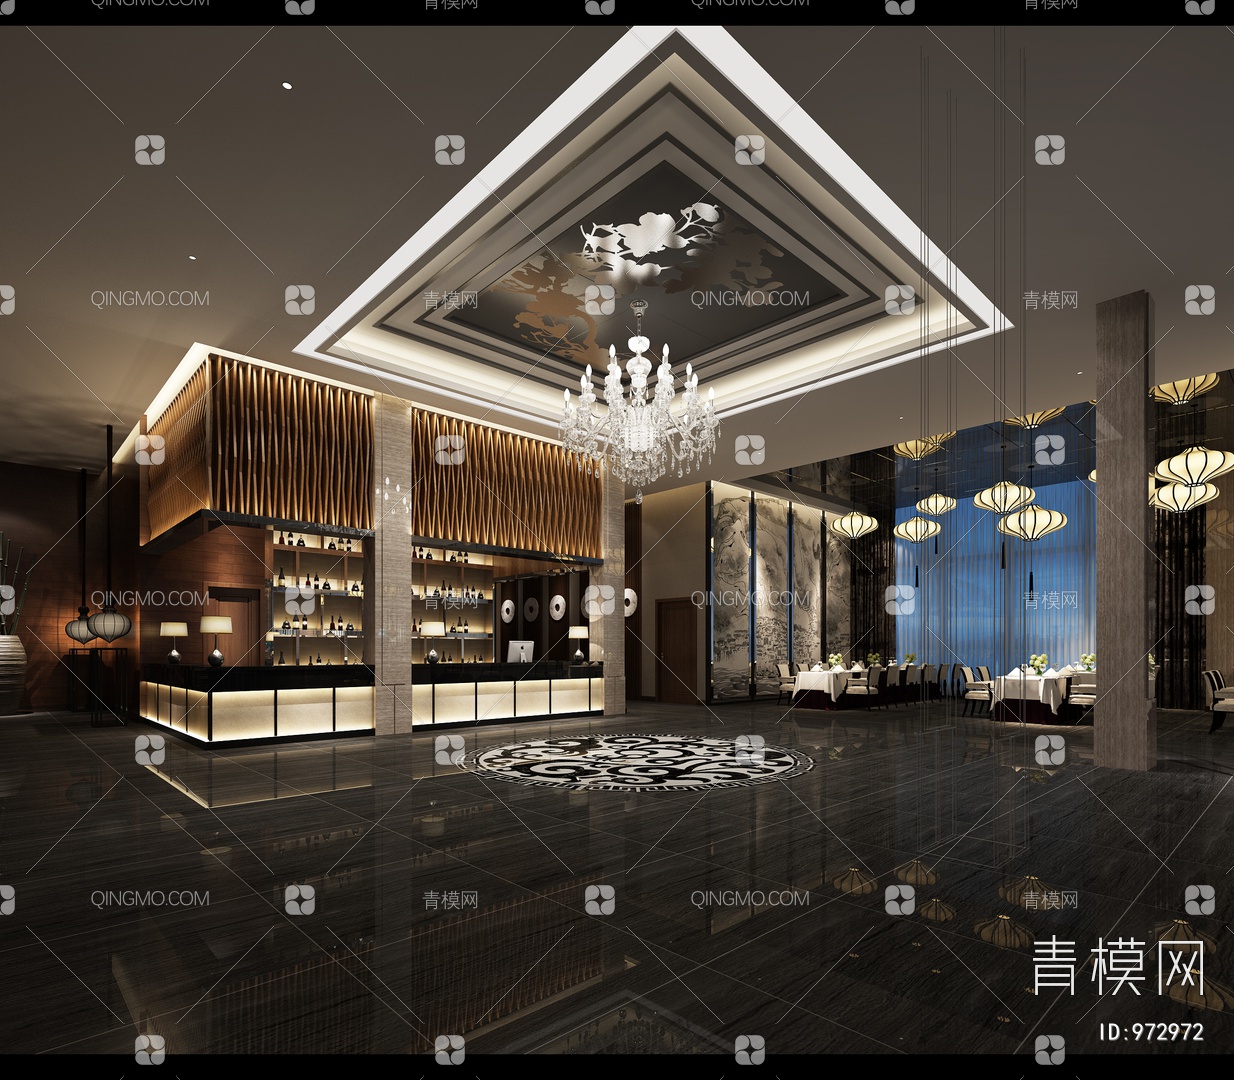 SCDA | 新加坡罗伯逊码头洲际酒店-建E网设计资讯-室内设计行业头条资讯新闻网站